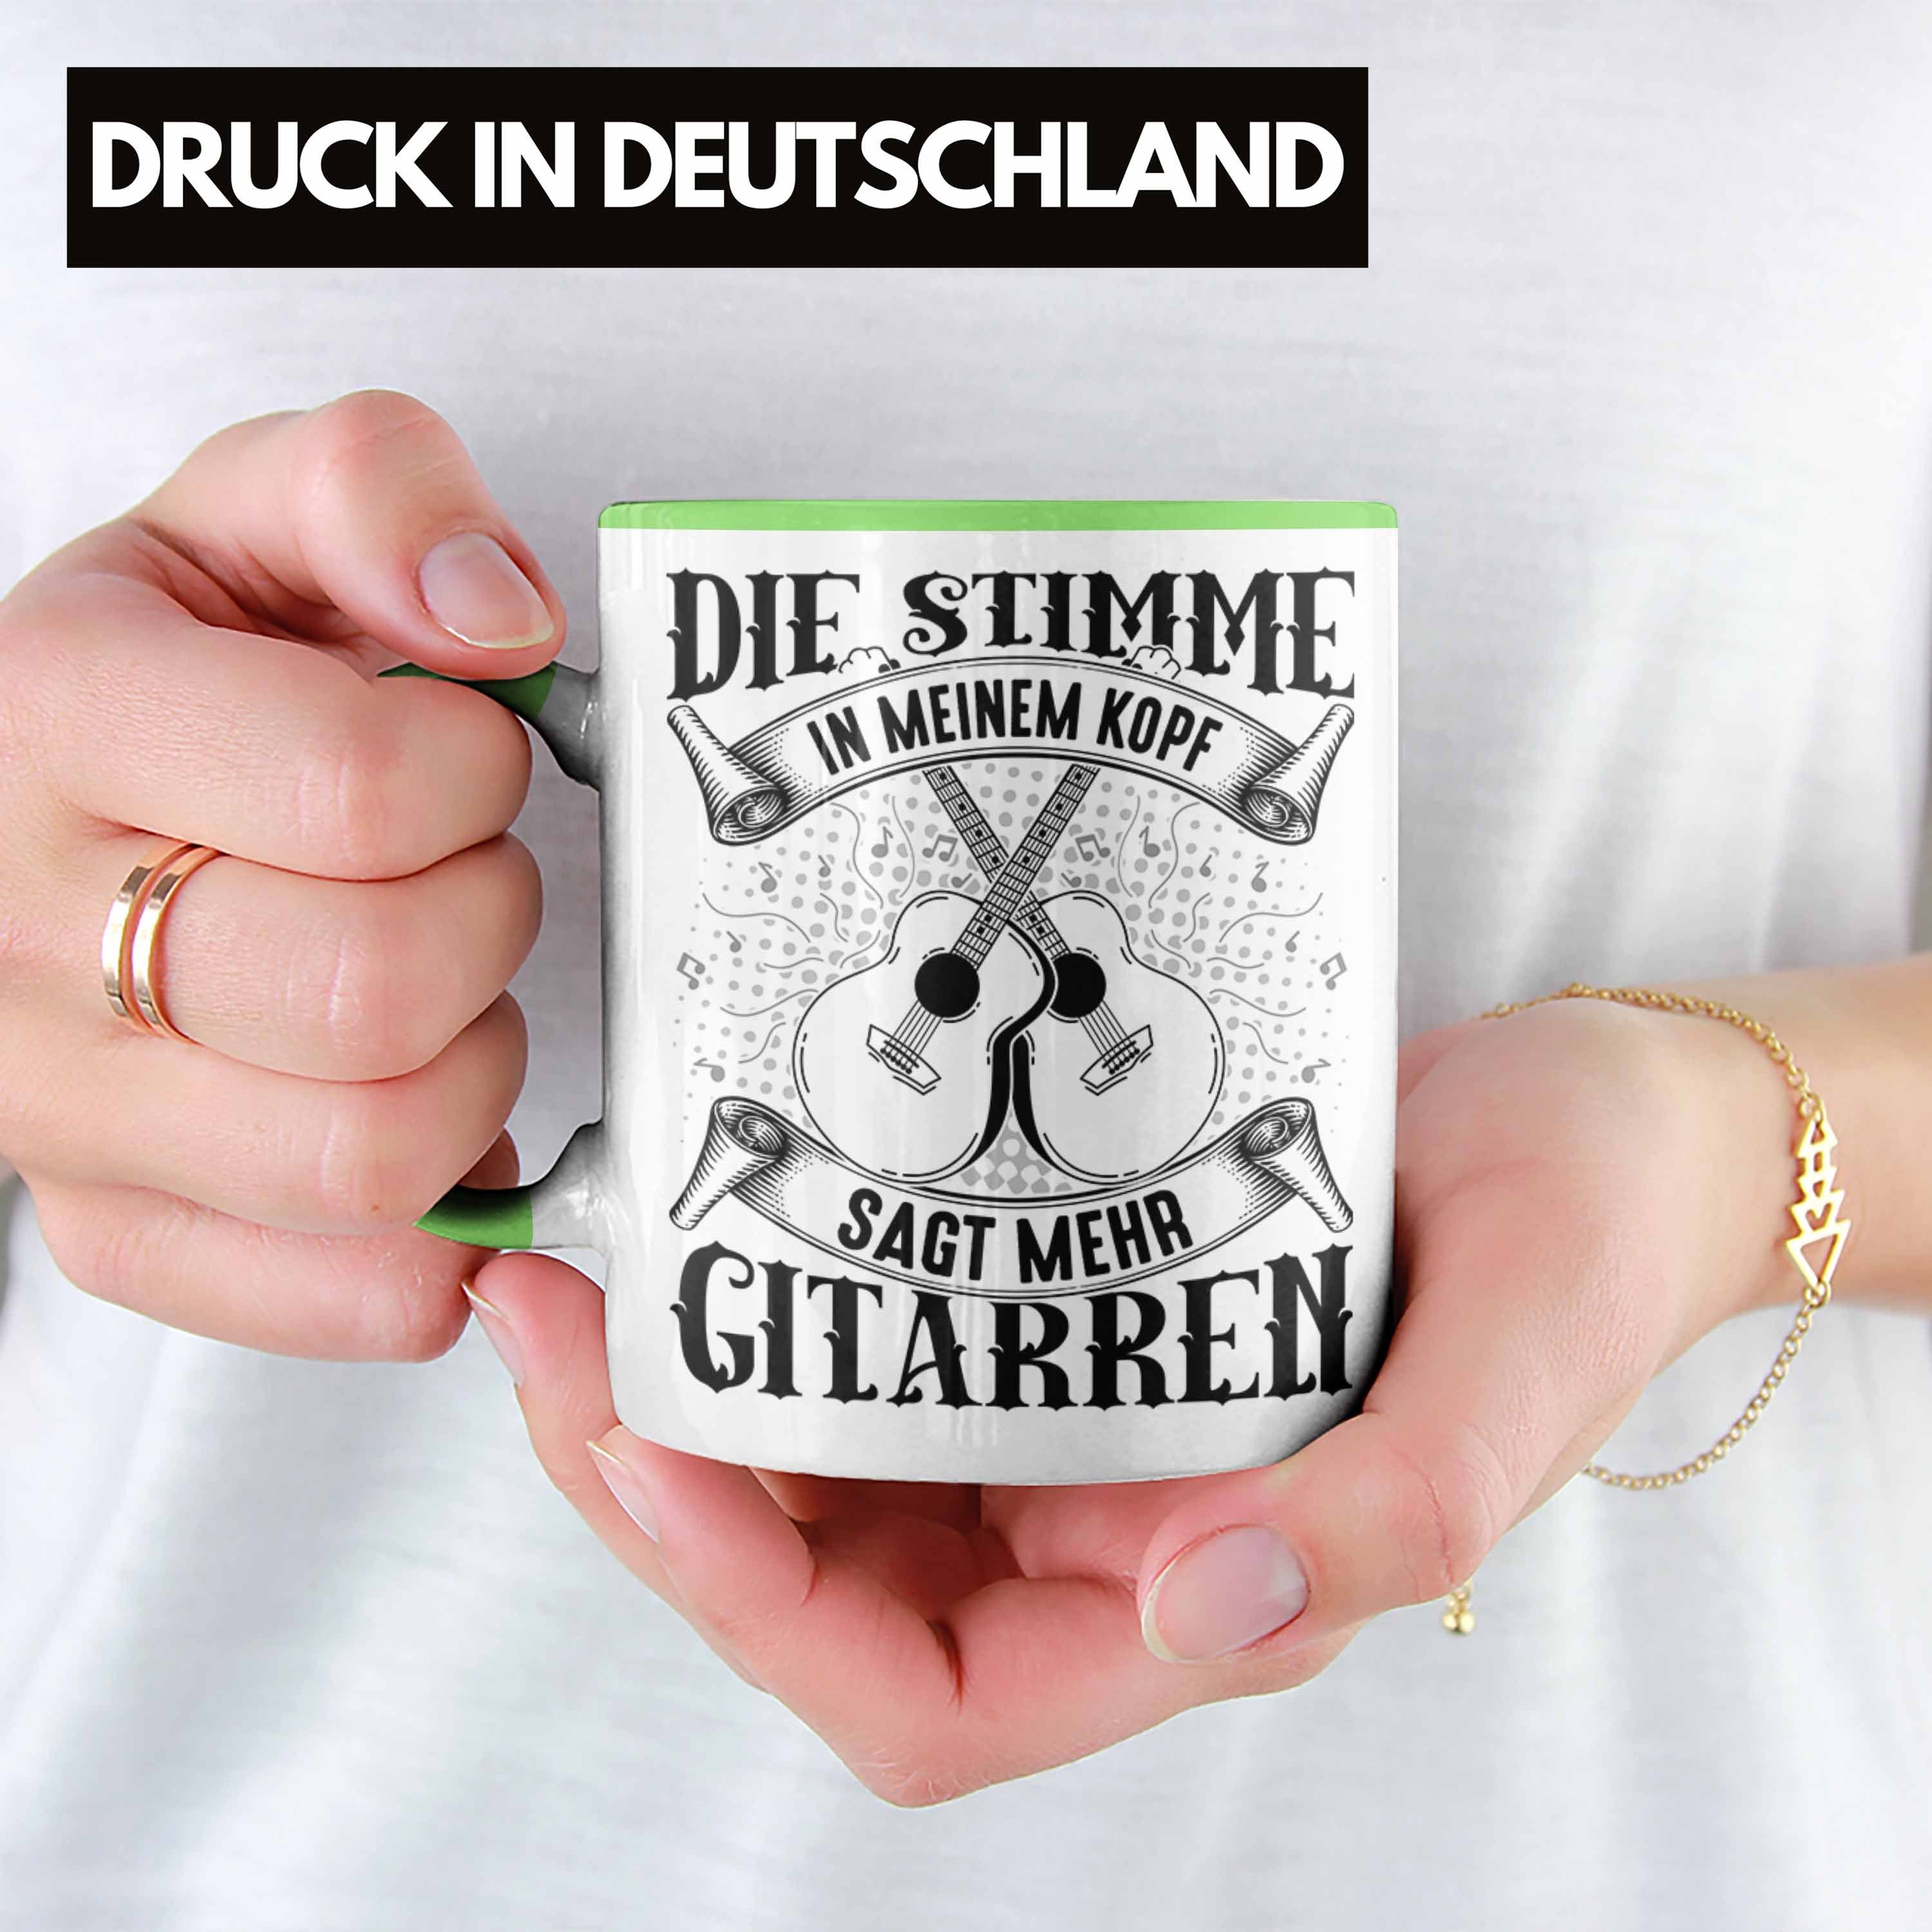 Trendation Tasse Gitarrenspieler Tasse Geschenk Geschenkidee Gitarre Spruch Kaffee-Bech Grün